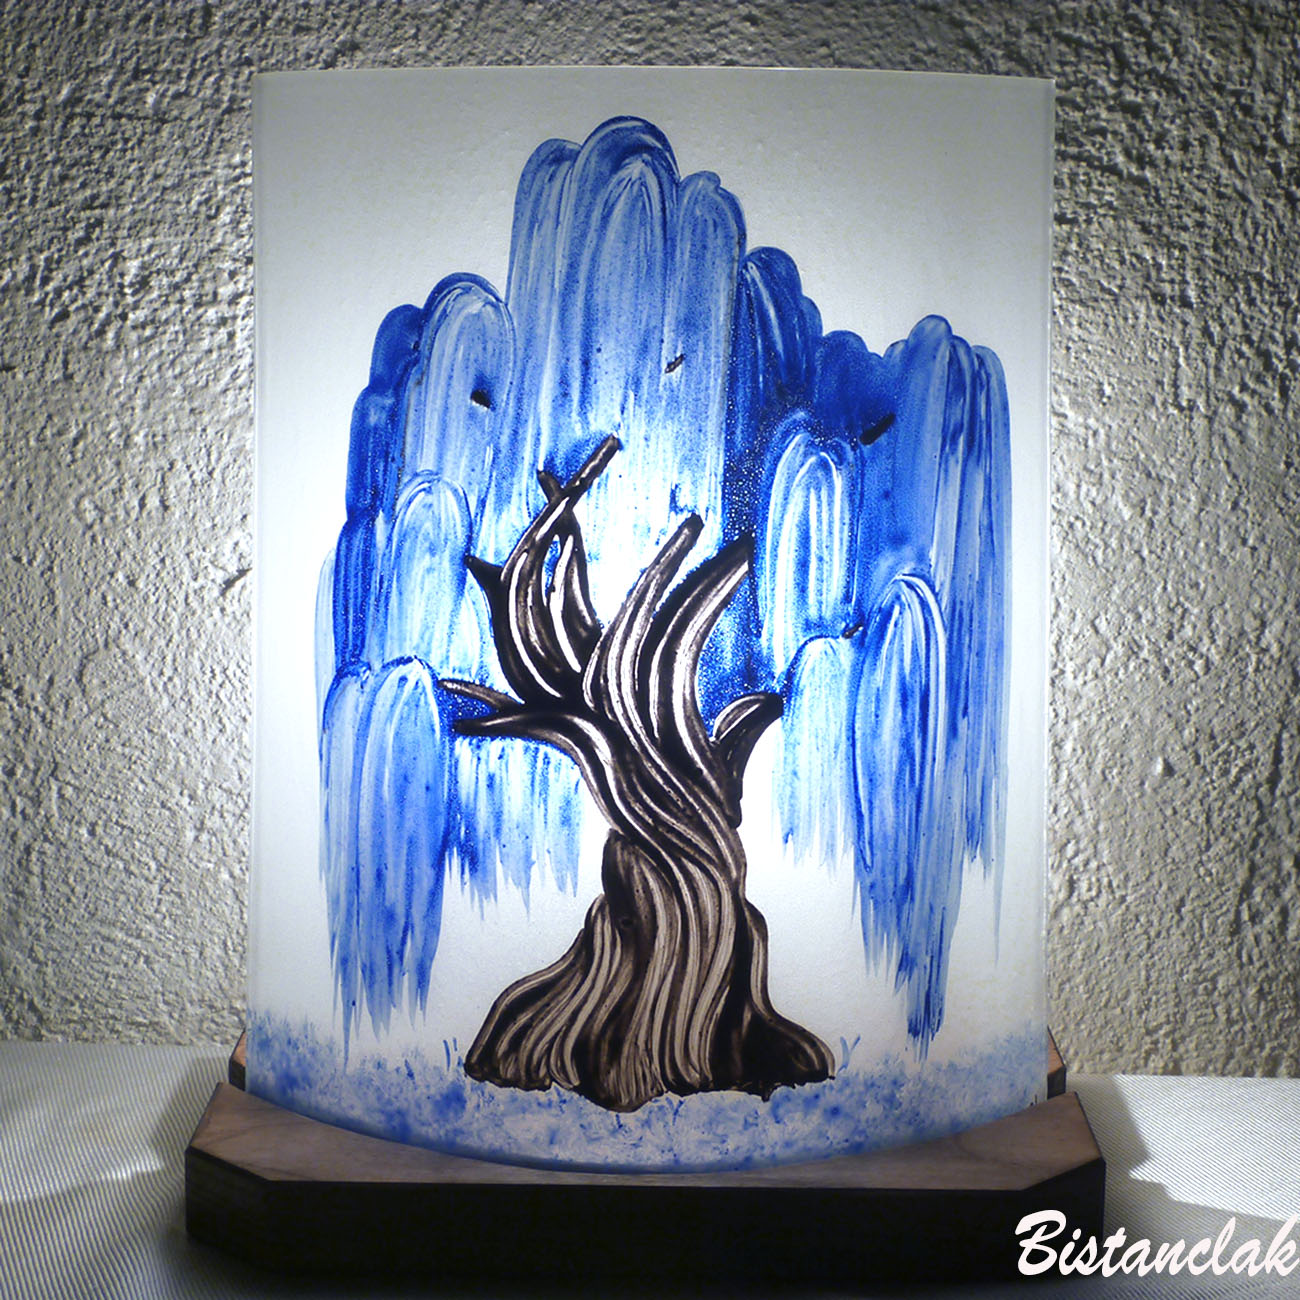 Vente en ligne de la lampe décorative blanche motif saule pleureur bleu cobalt creation artisanale francaise par bistanclak